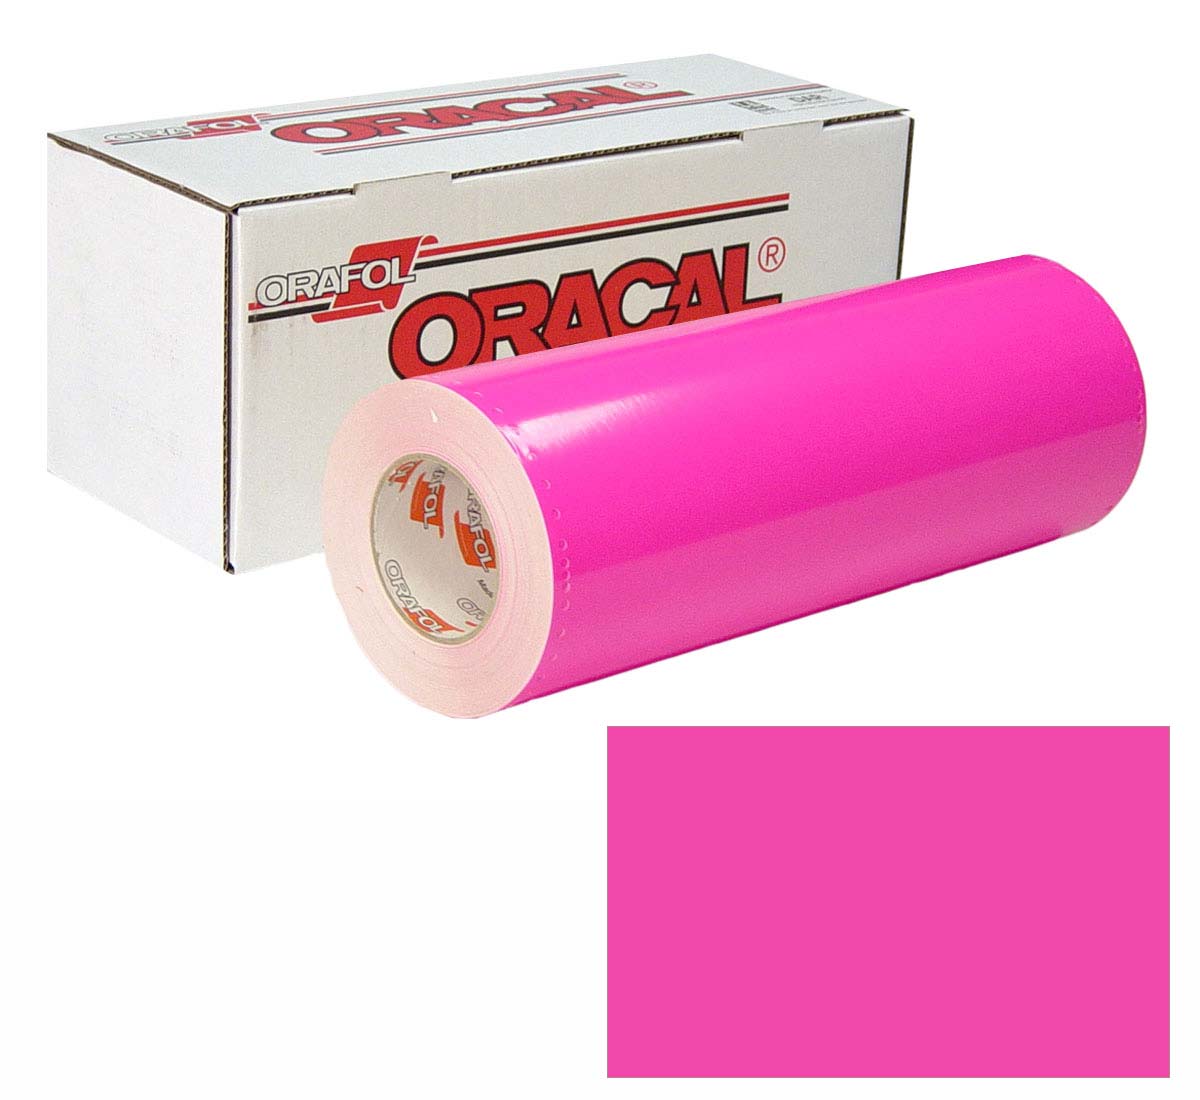 ORACAL 7510 Fluor Unp 48in X 50yd 046 Pink